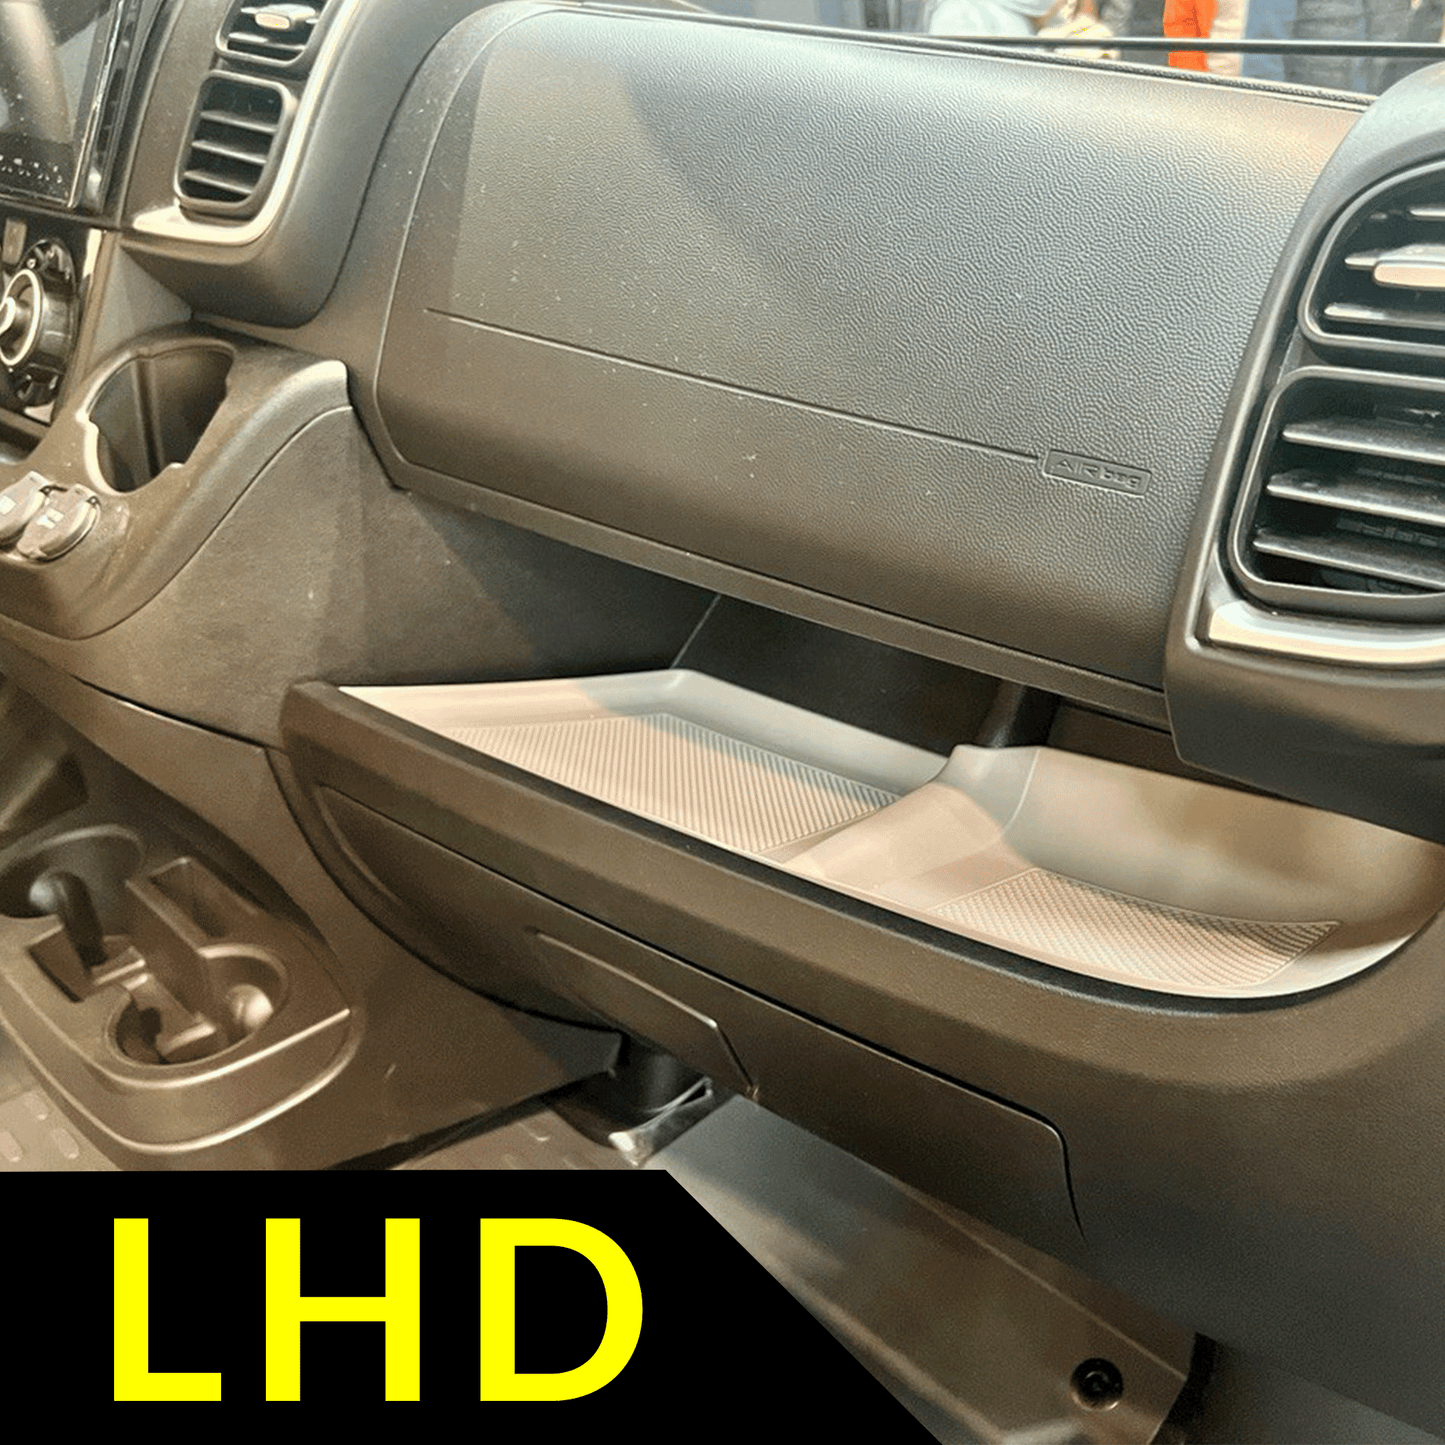 Inserción/Mat de goma para salpicadero inferior nuevo de Fiat Ducato en color gris claro para conducción a la izquierda (LHD)